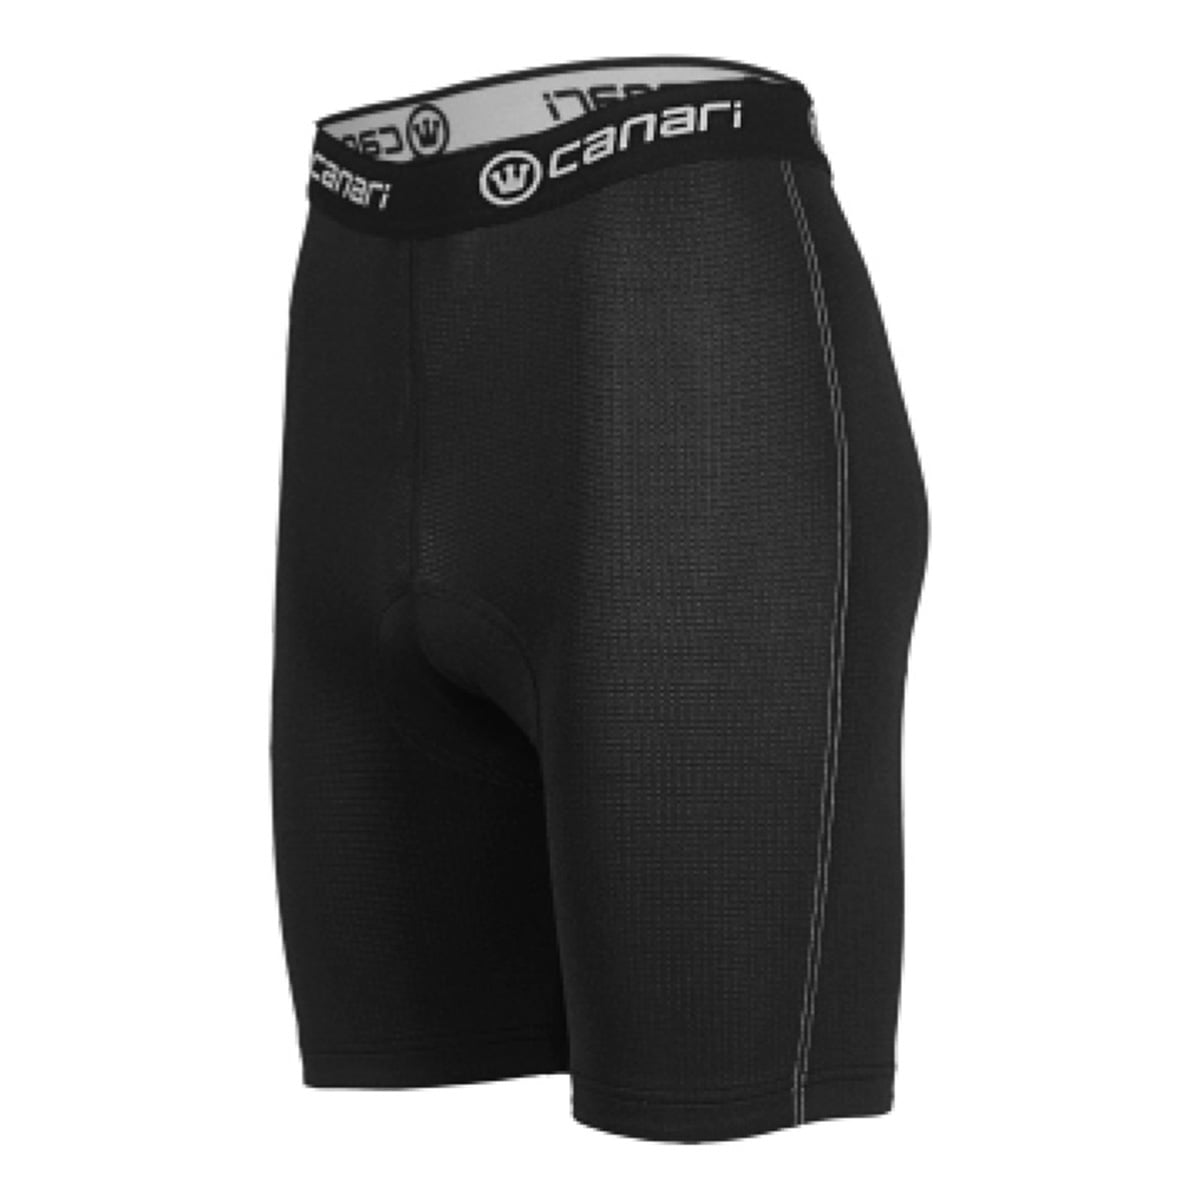 CANARI CYCLEWEAR Gel Briefs Padded Lightweight Cycling Underwear Mens XXL New 